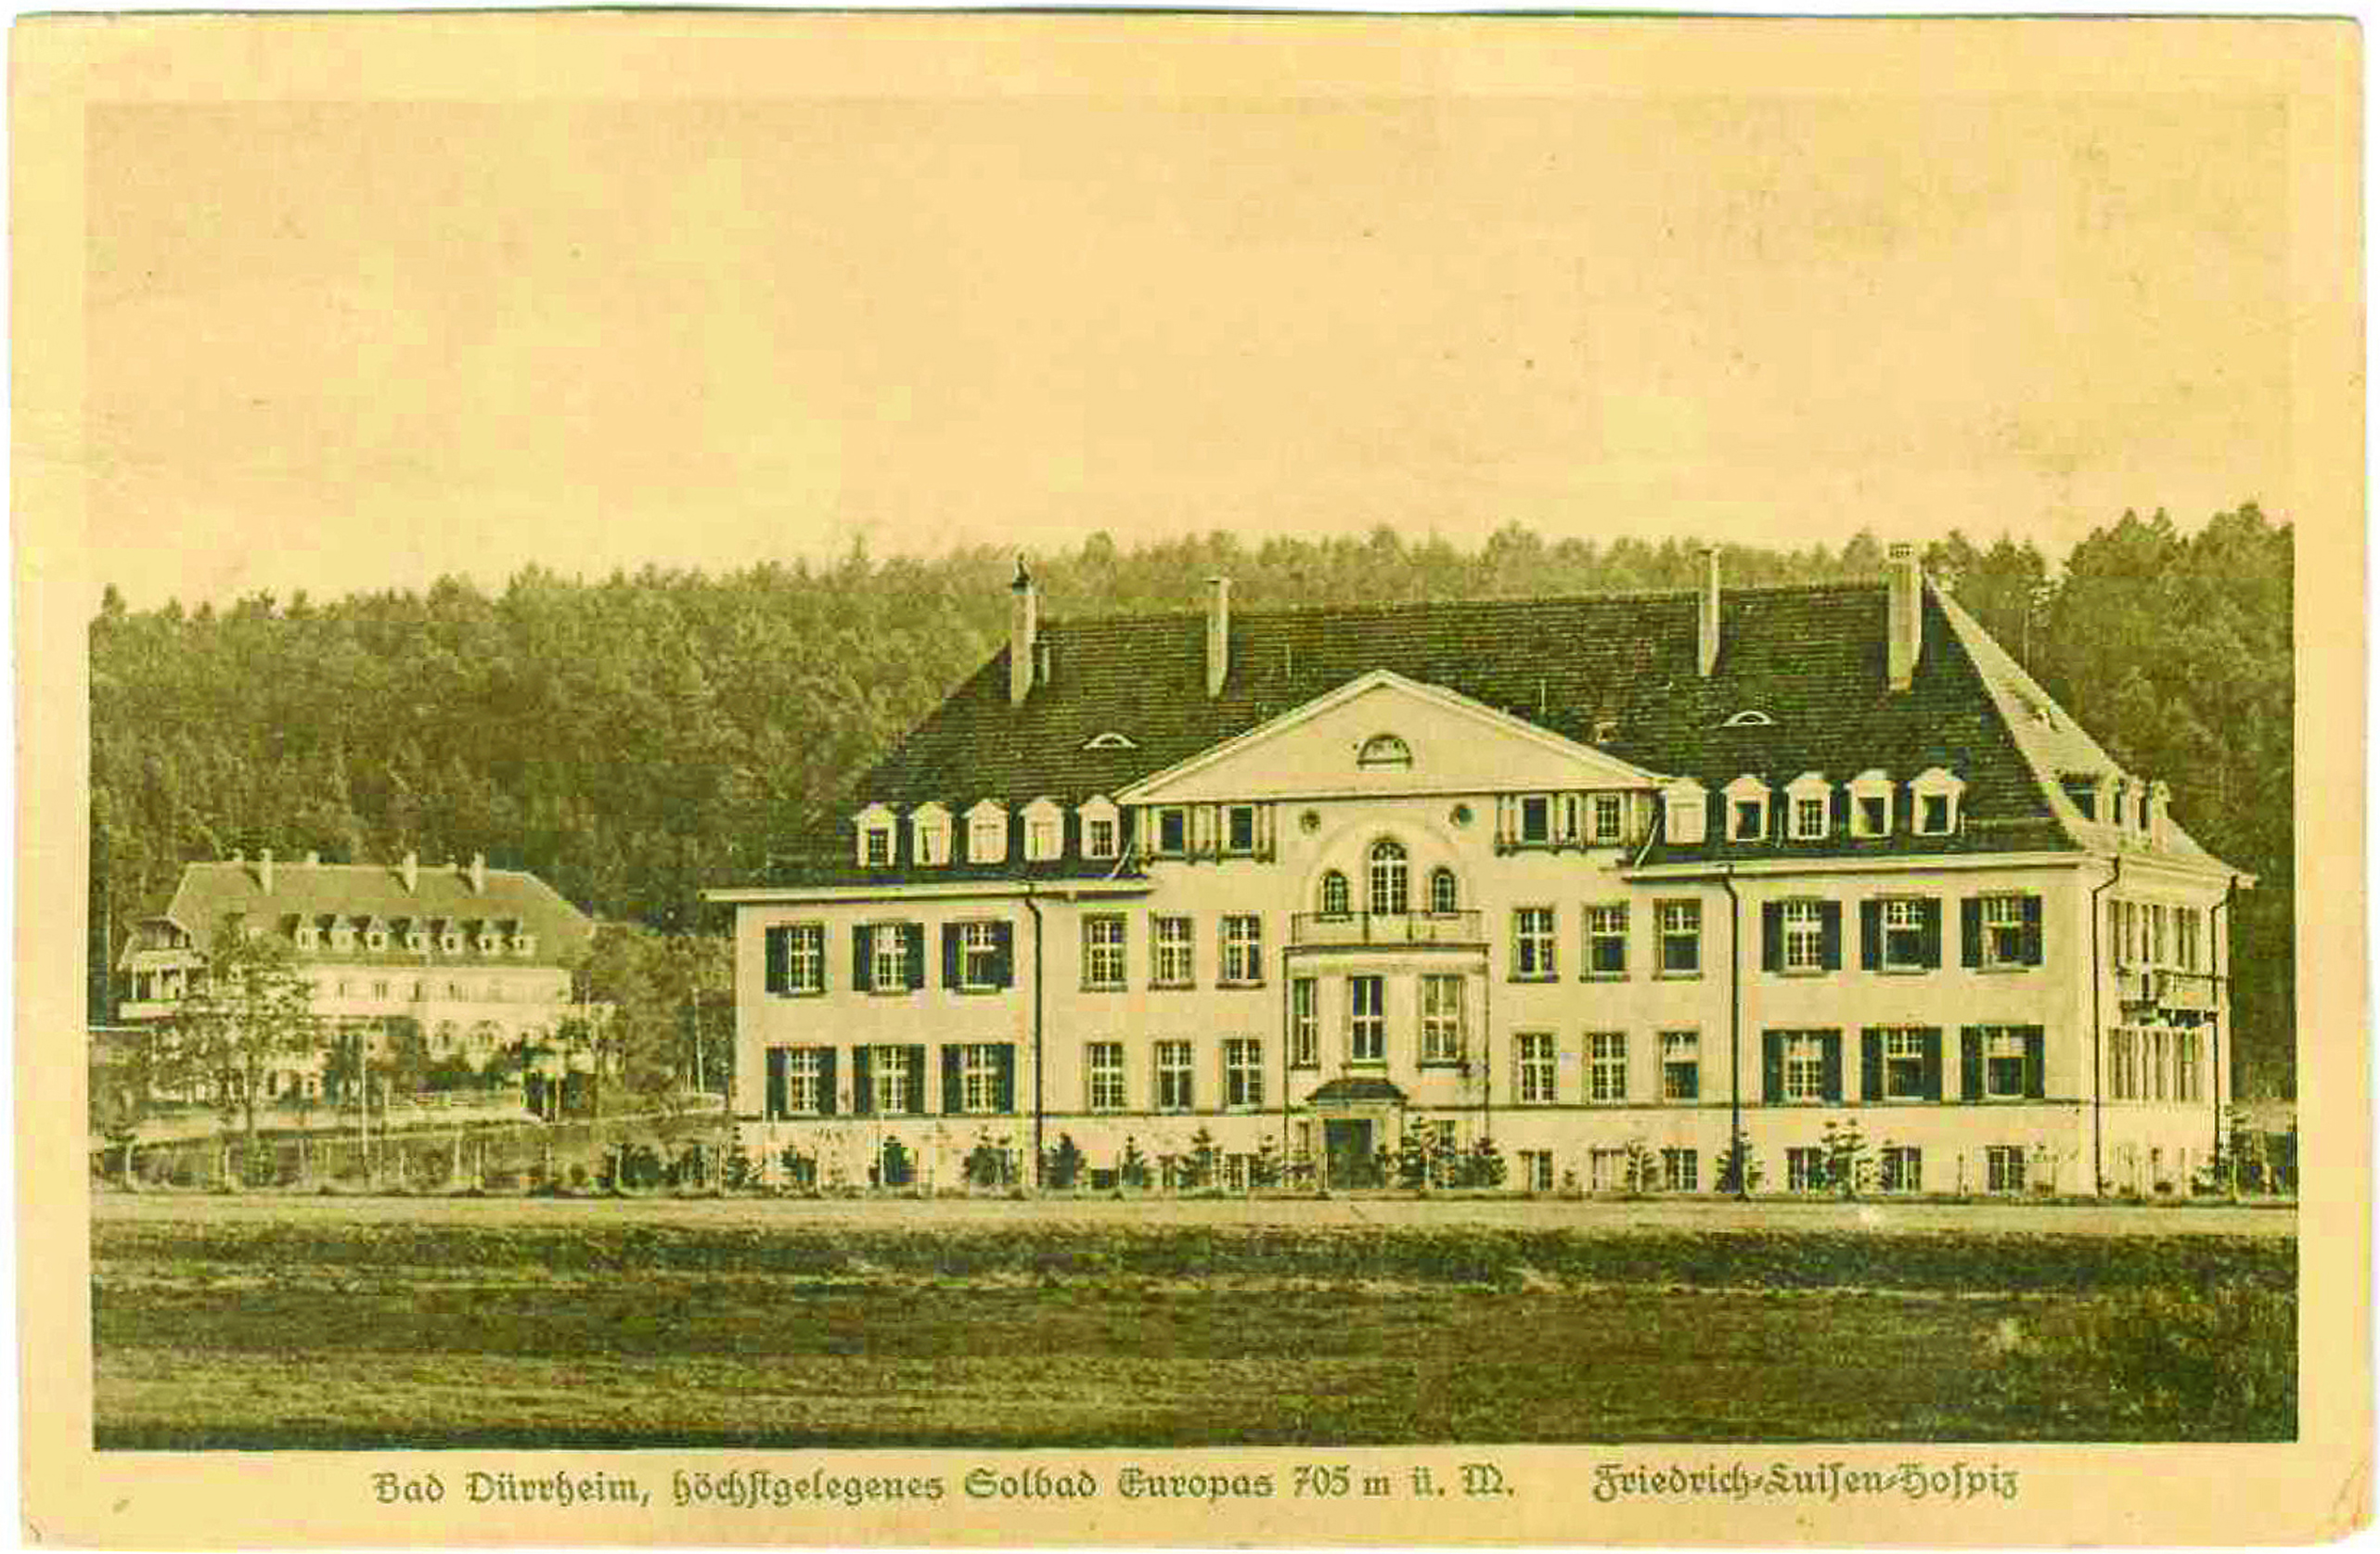 Das Friedrich-Luisen-Hospiz in Bad Dürrheim auf einer alten Ansichtskarte.